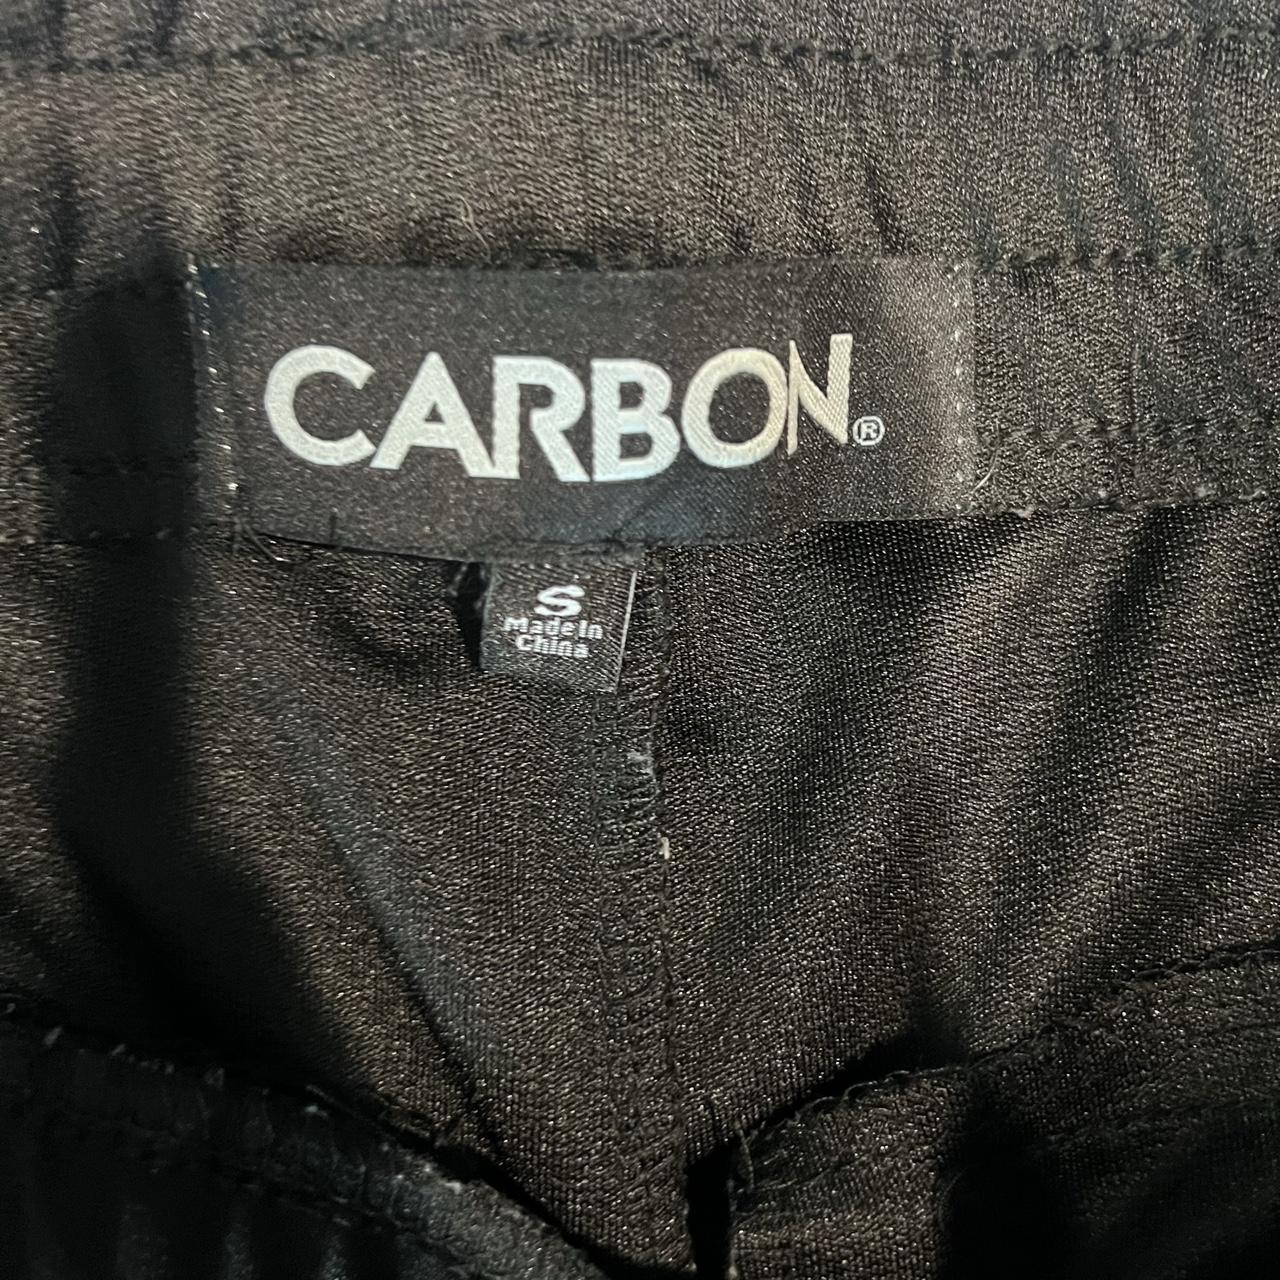 mens Carbon blue jean pants size 3432 NWOT  eBay